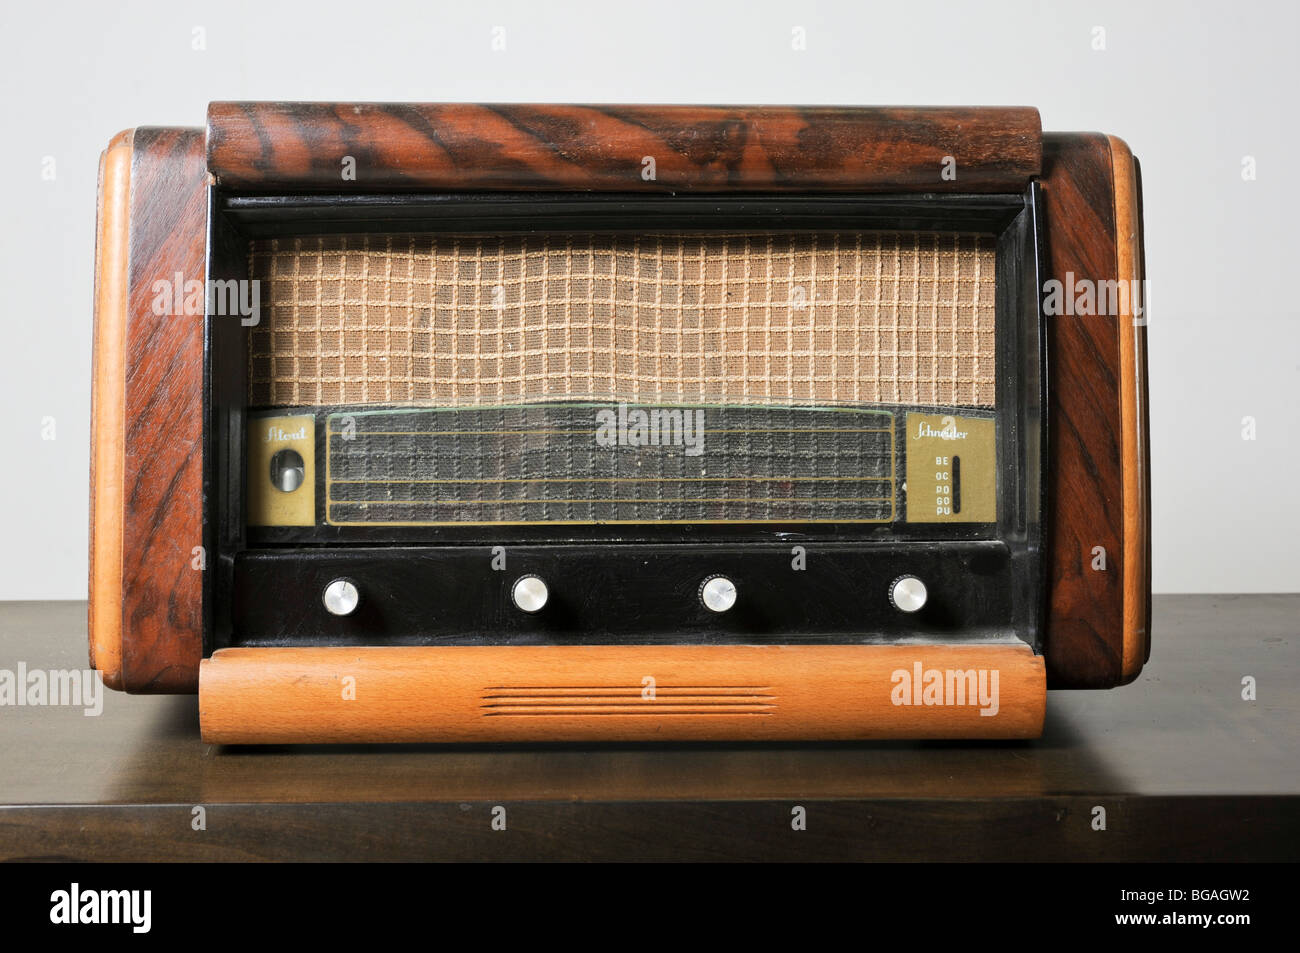 Cutout of a retro Schneider radio receiver on white background Stock Photo